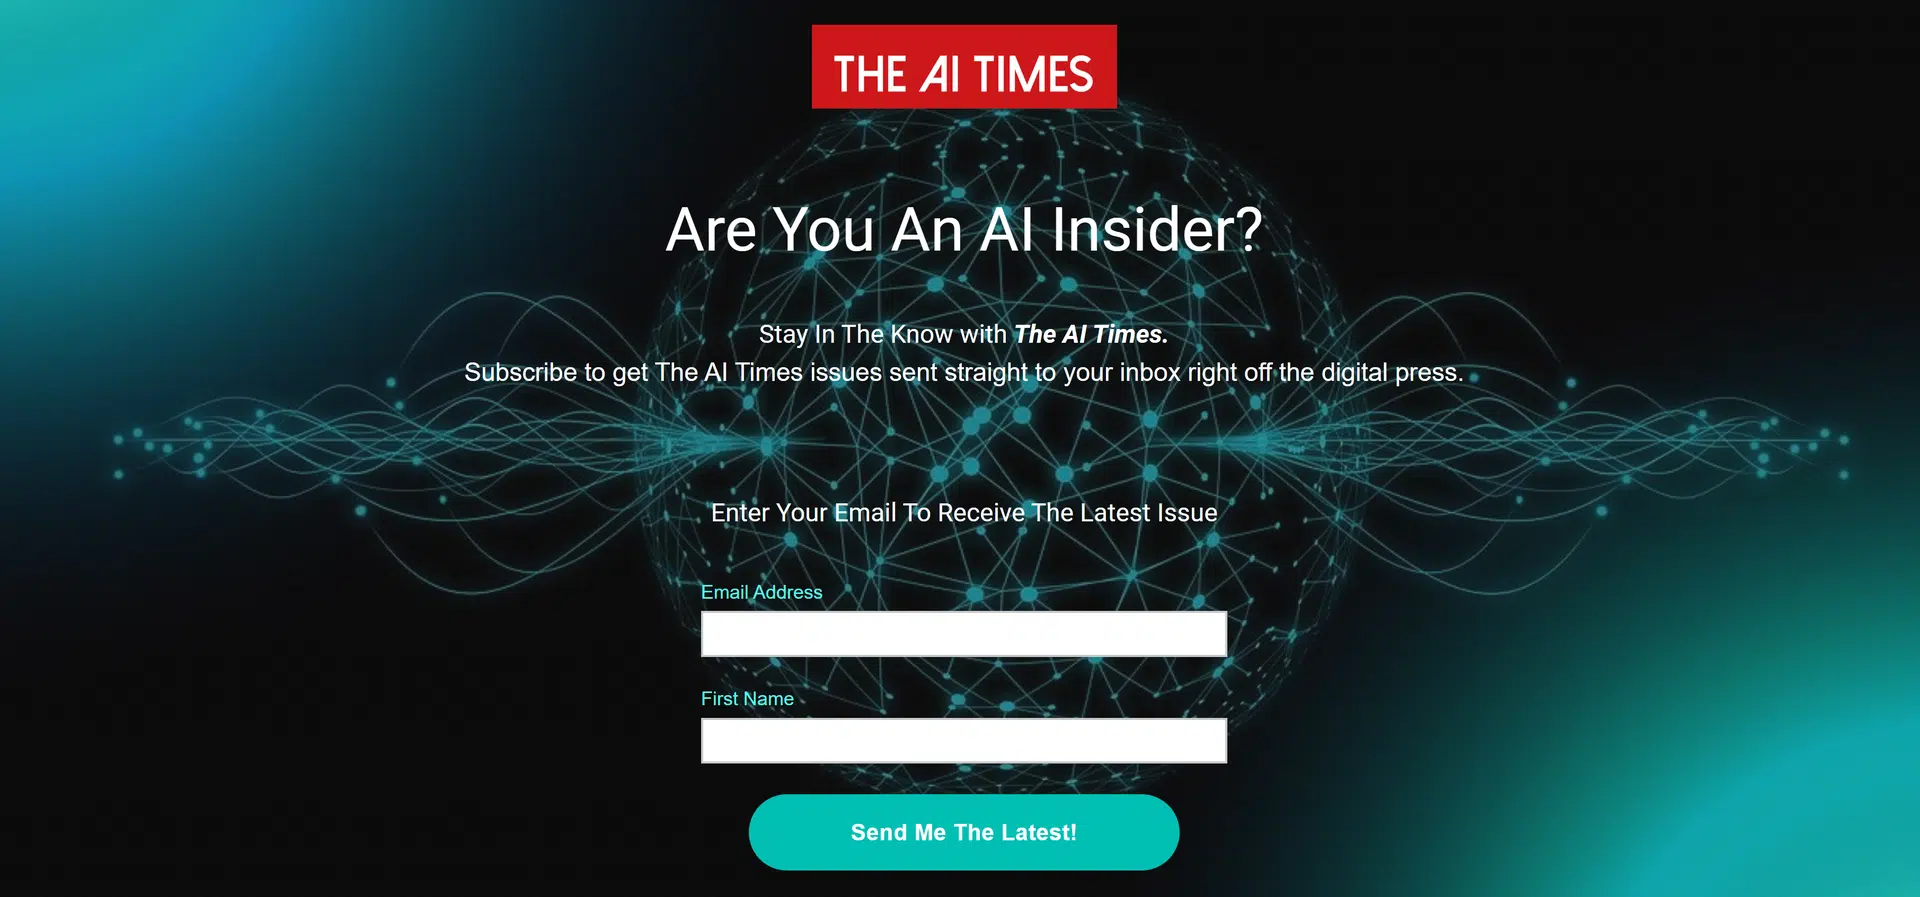 The AI Timeswebsite picture